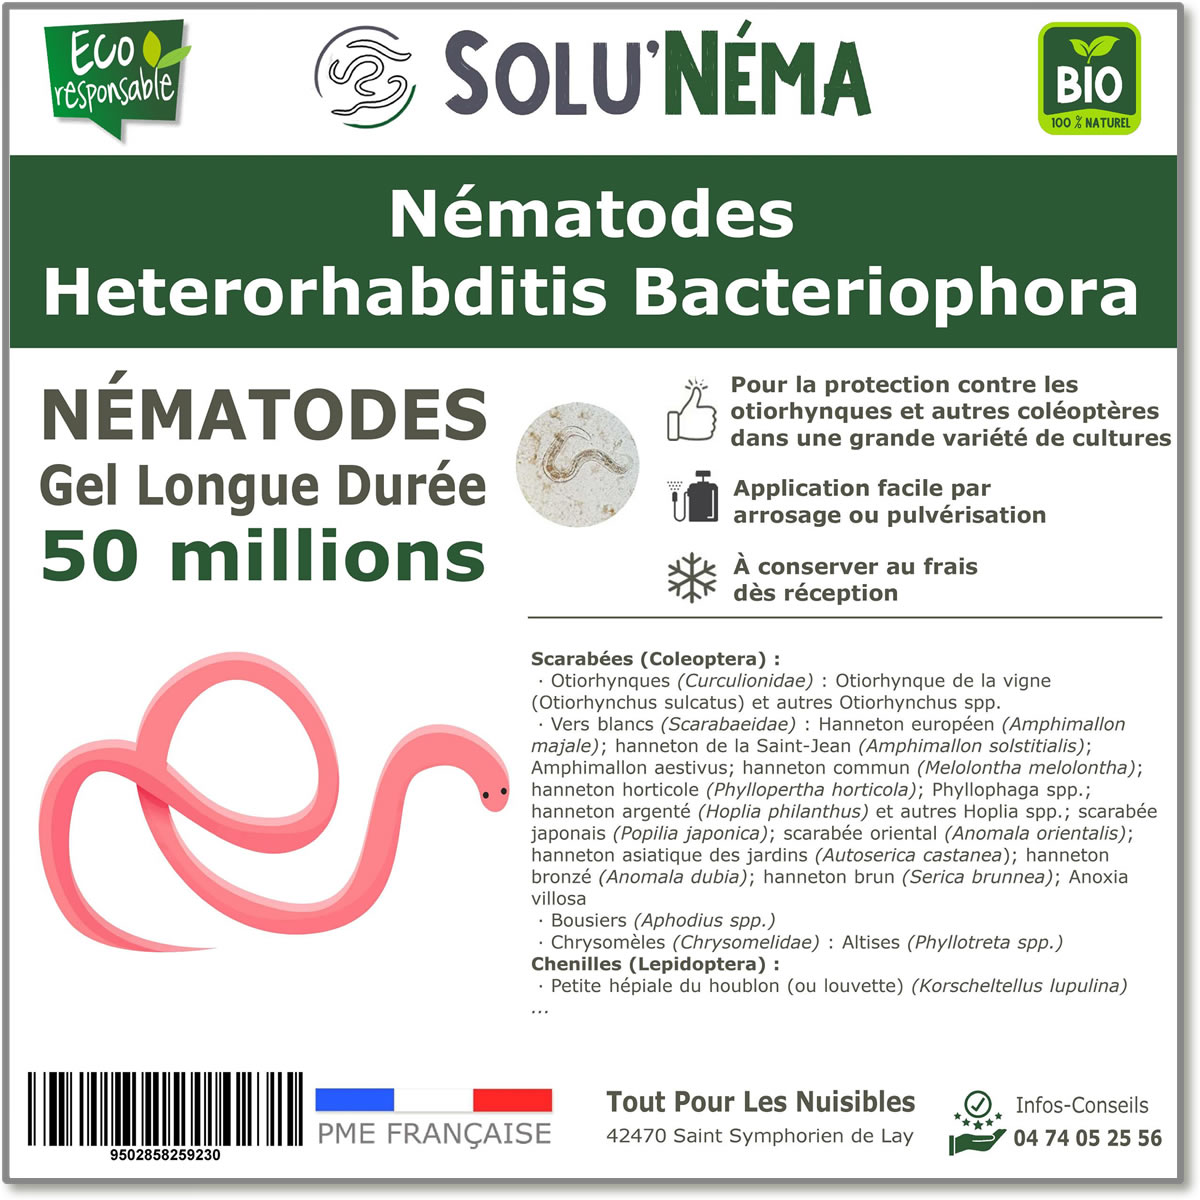 50 millones de nematodos Heterorhabditis Bacteriophora (HB)